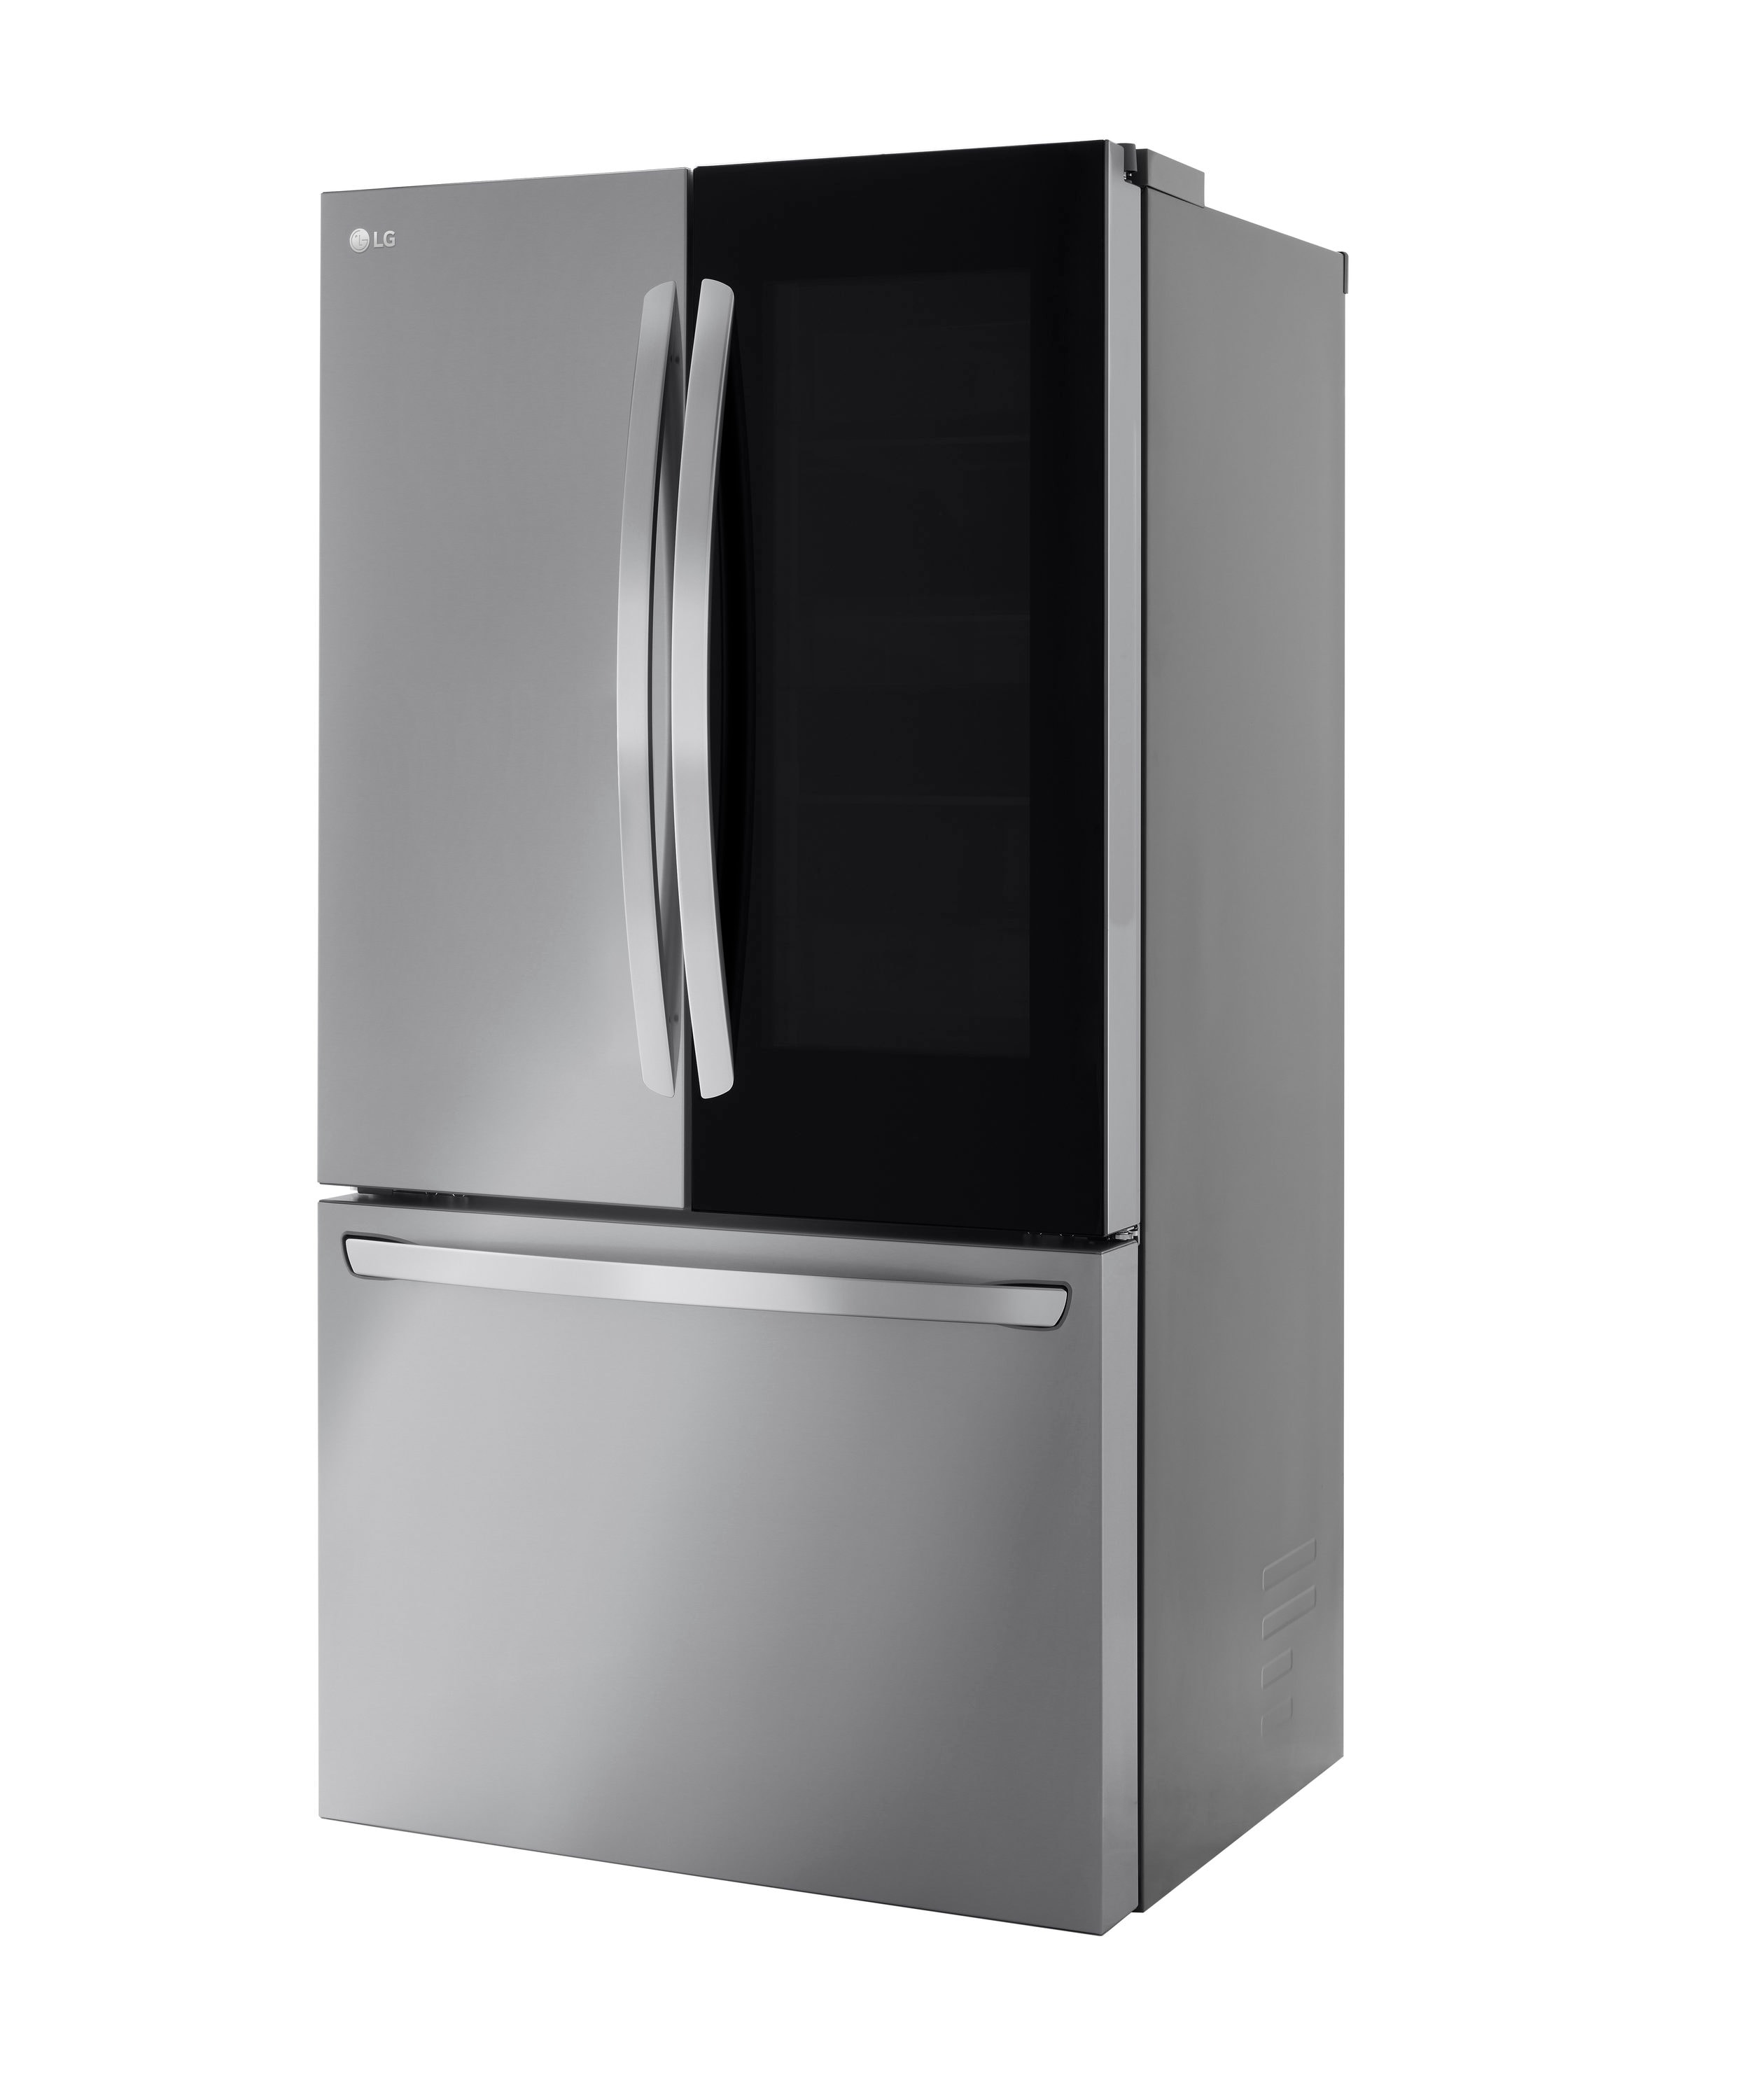 LG Refrigerators - French Door 3 Door 27 Cu Ft - LRFLC2706SS